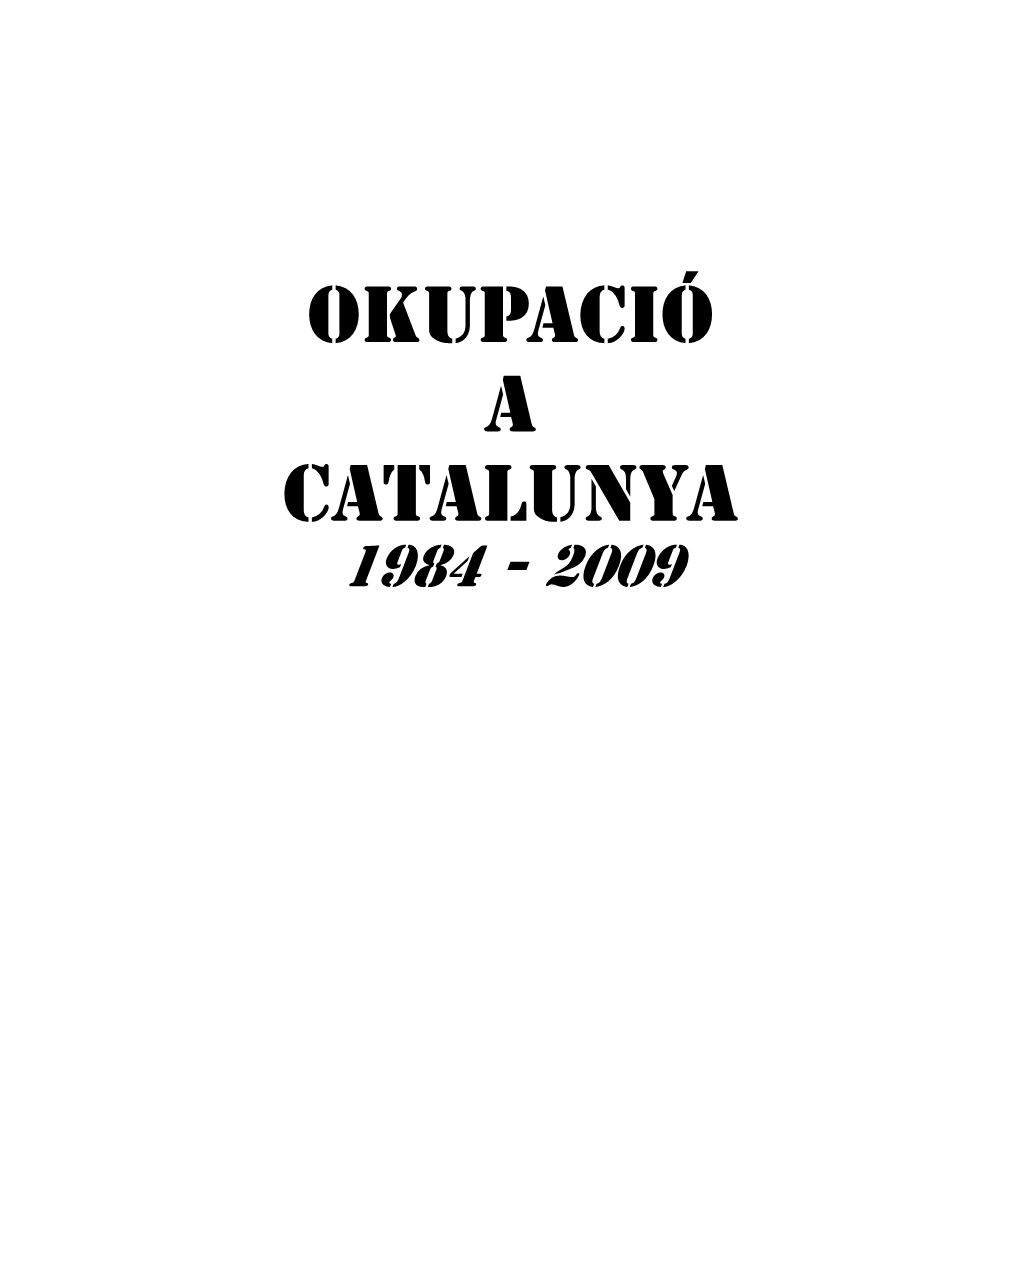 Okupació a Catalunya 1984 - 2009